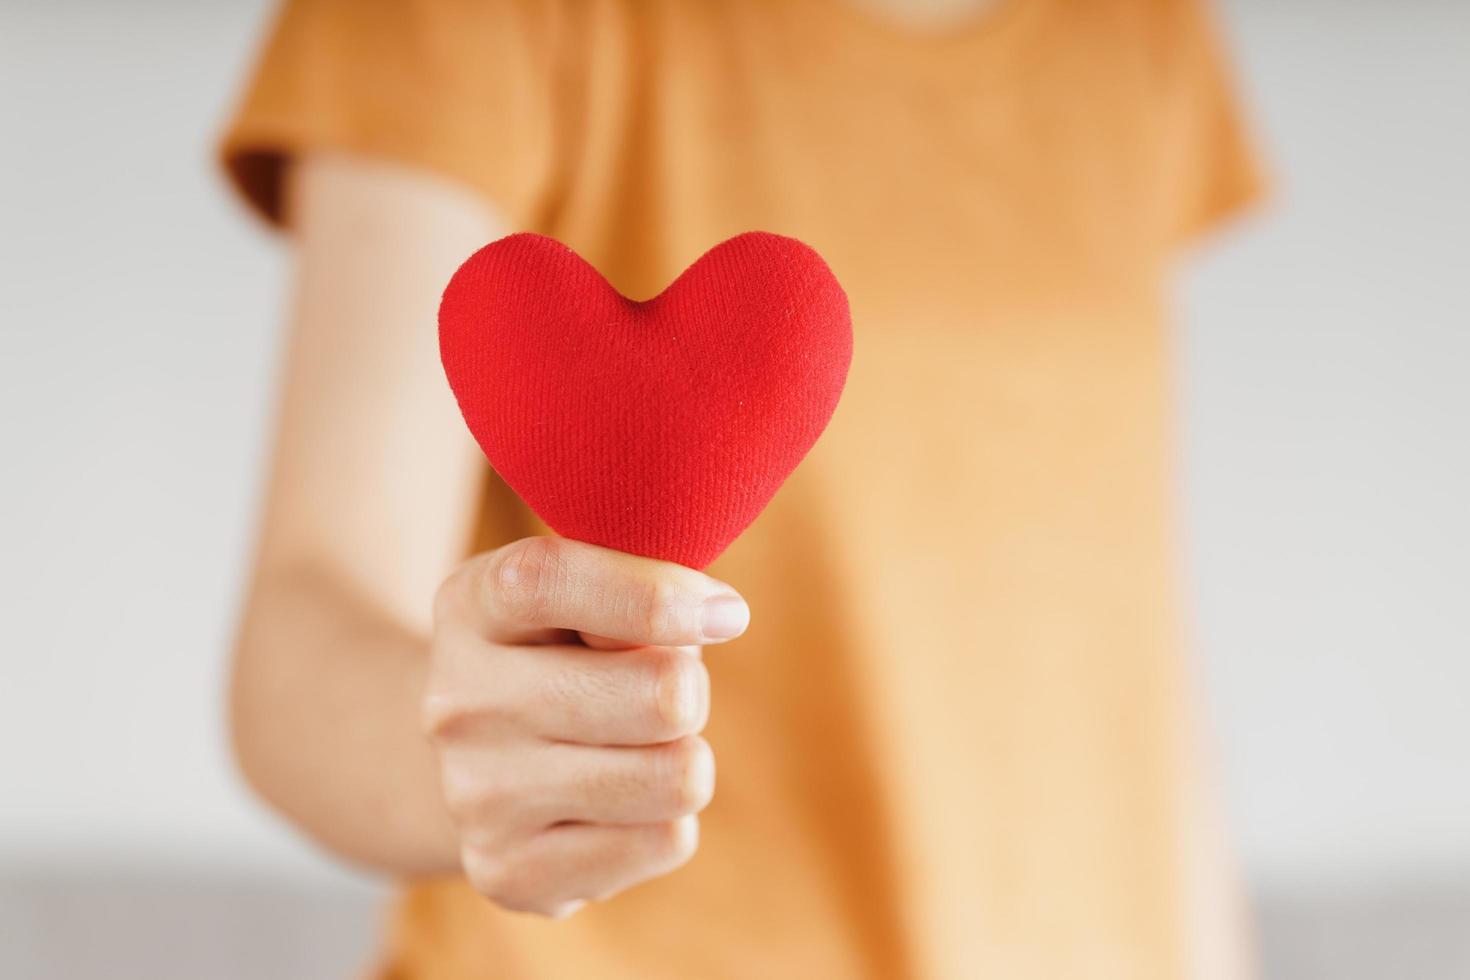 femme tenant un coeur rouge, amour, assurance maladie, don, volontaire caritatif heureux, journée mondiale de la santé mentale, journée mondiale du coeur, saint valentin photo